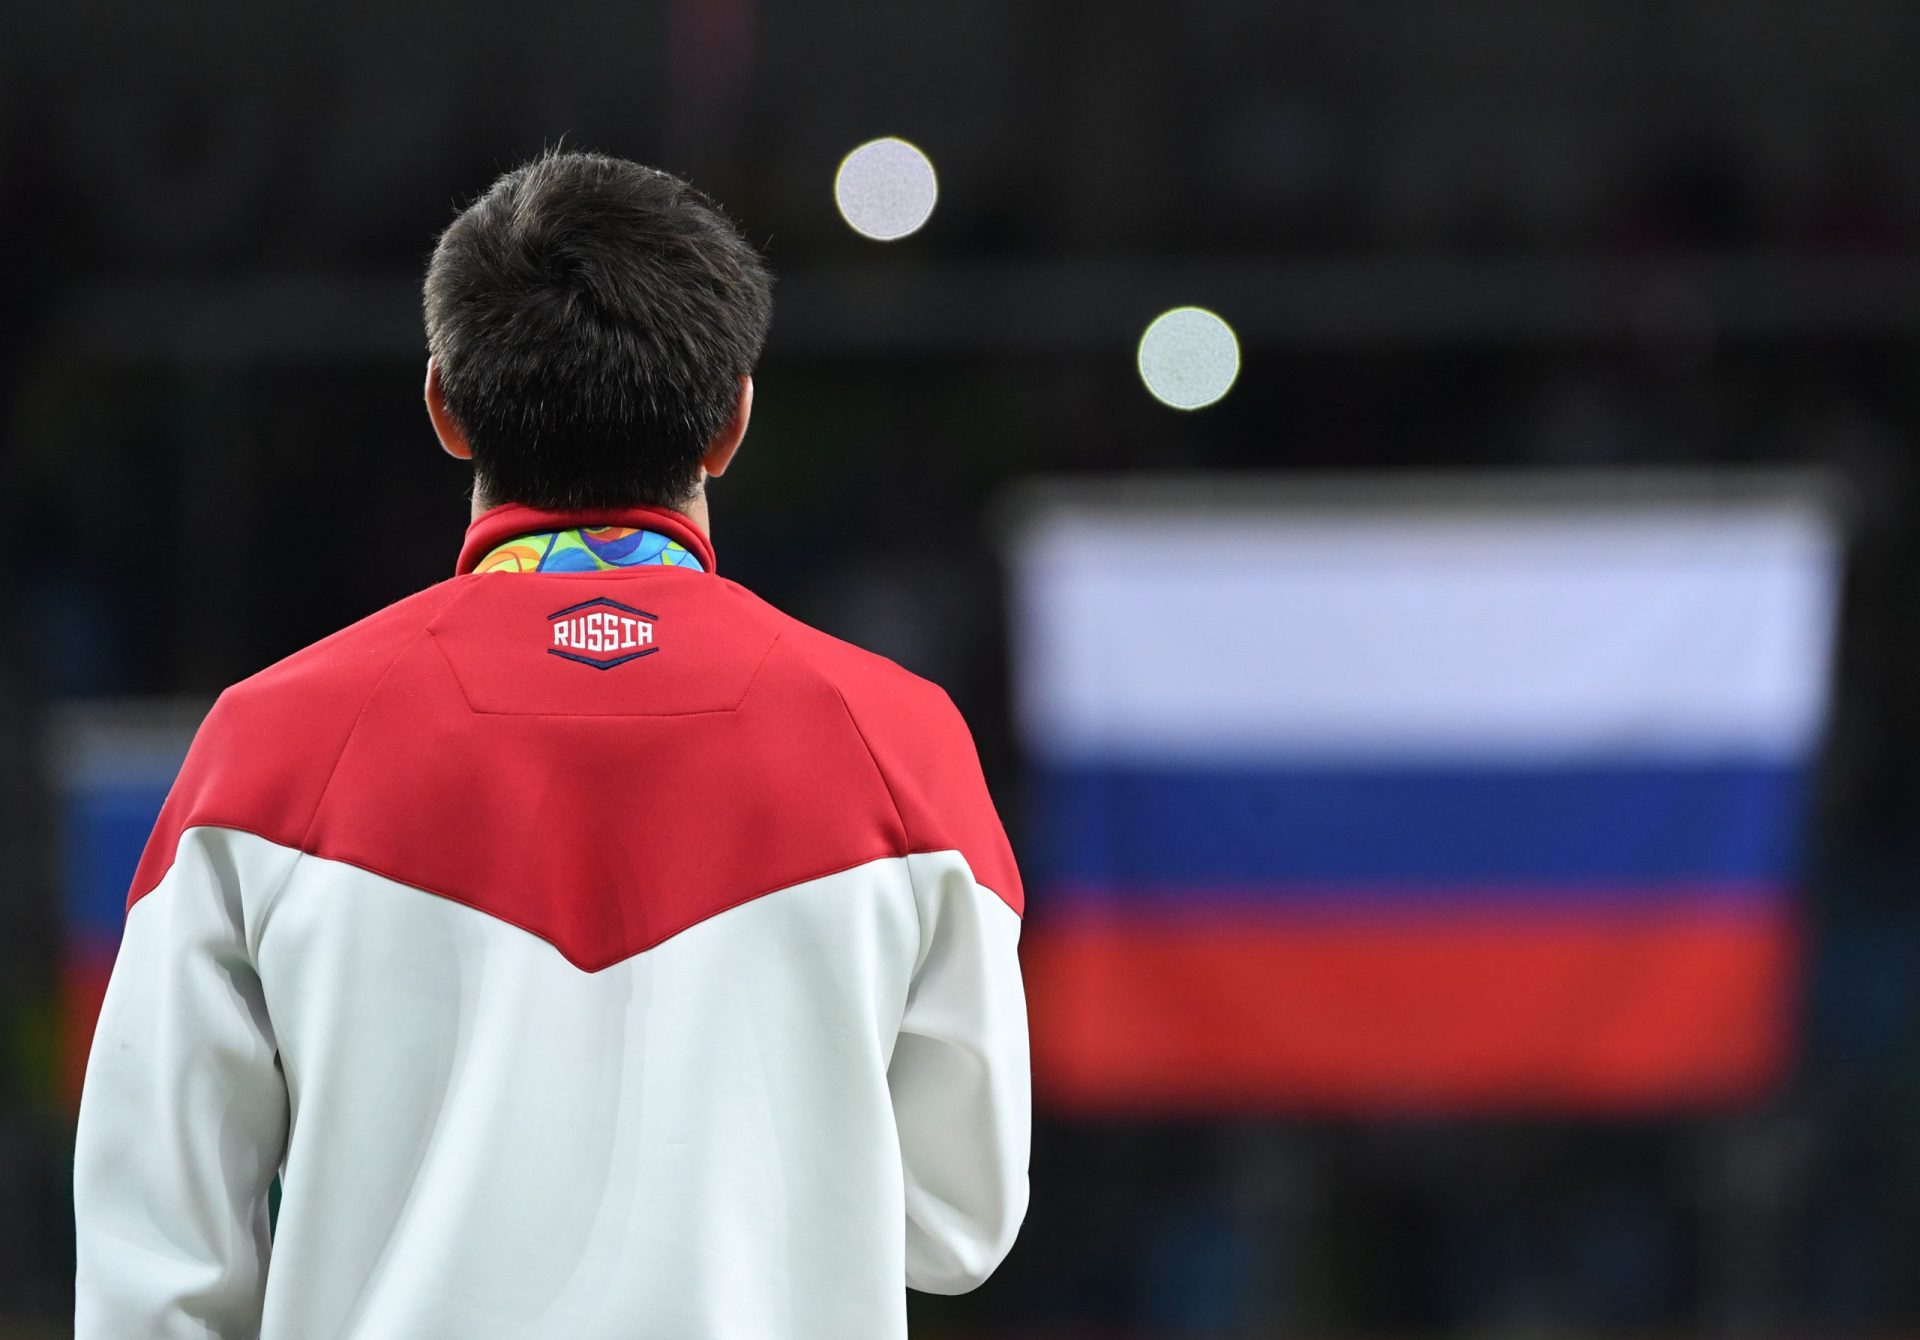 Rússia banida dos Jogos Paralímpicos